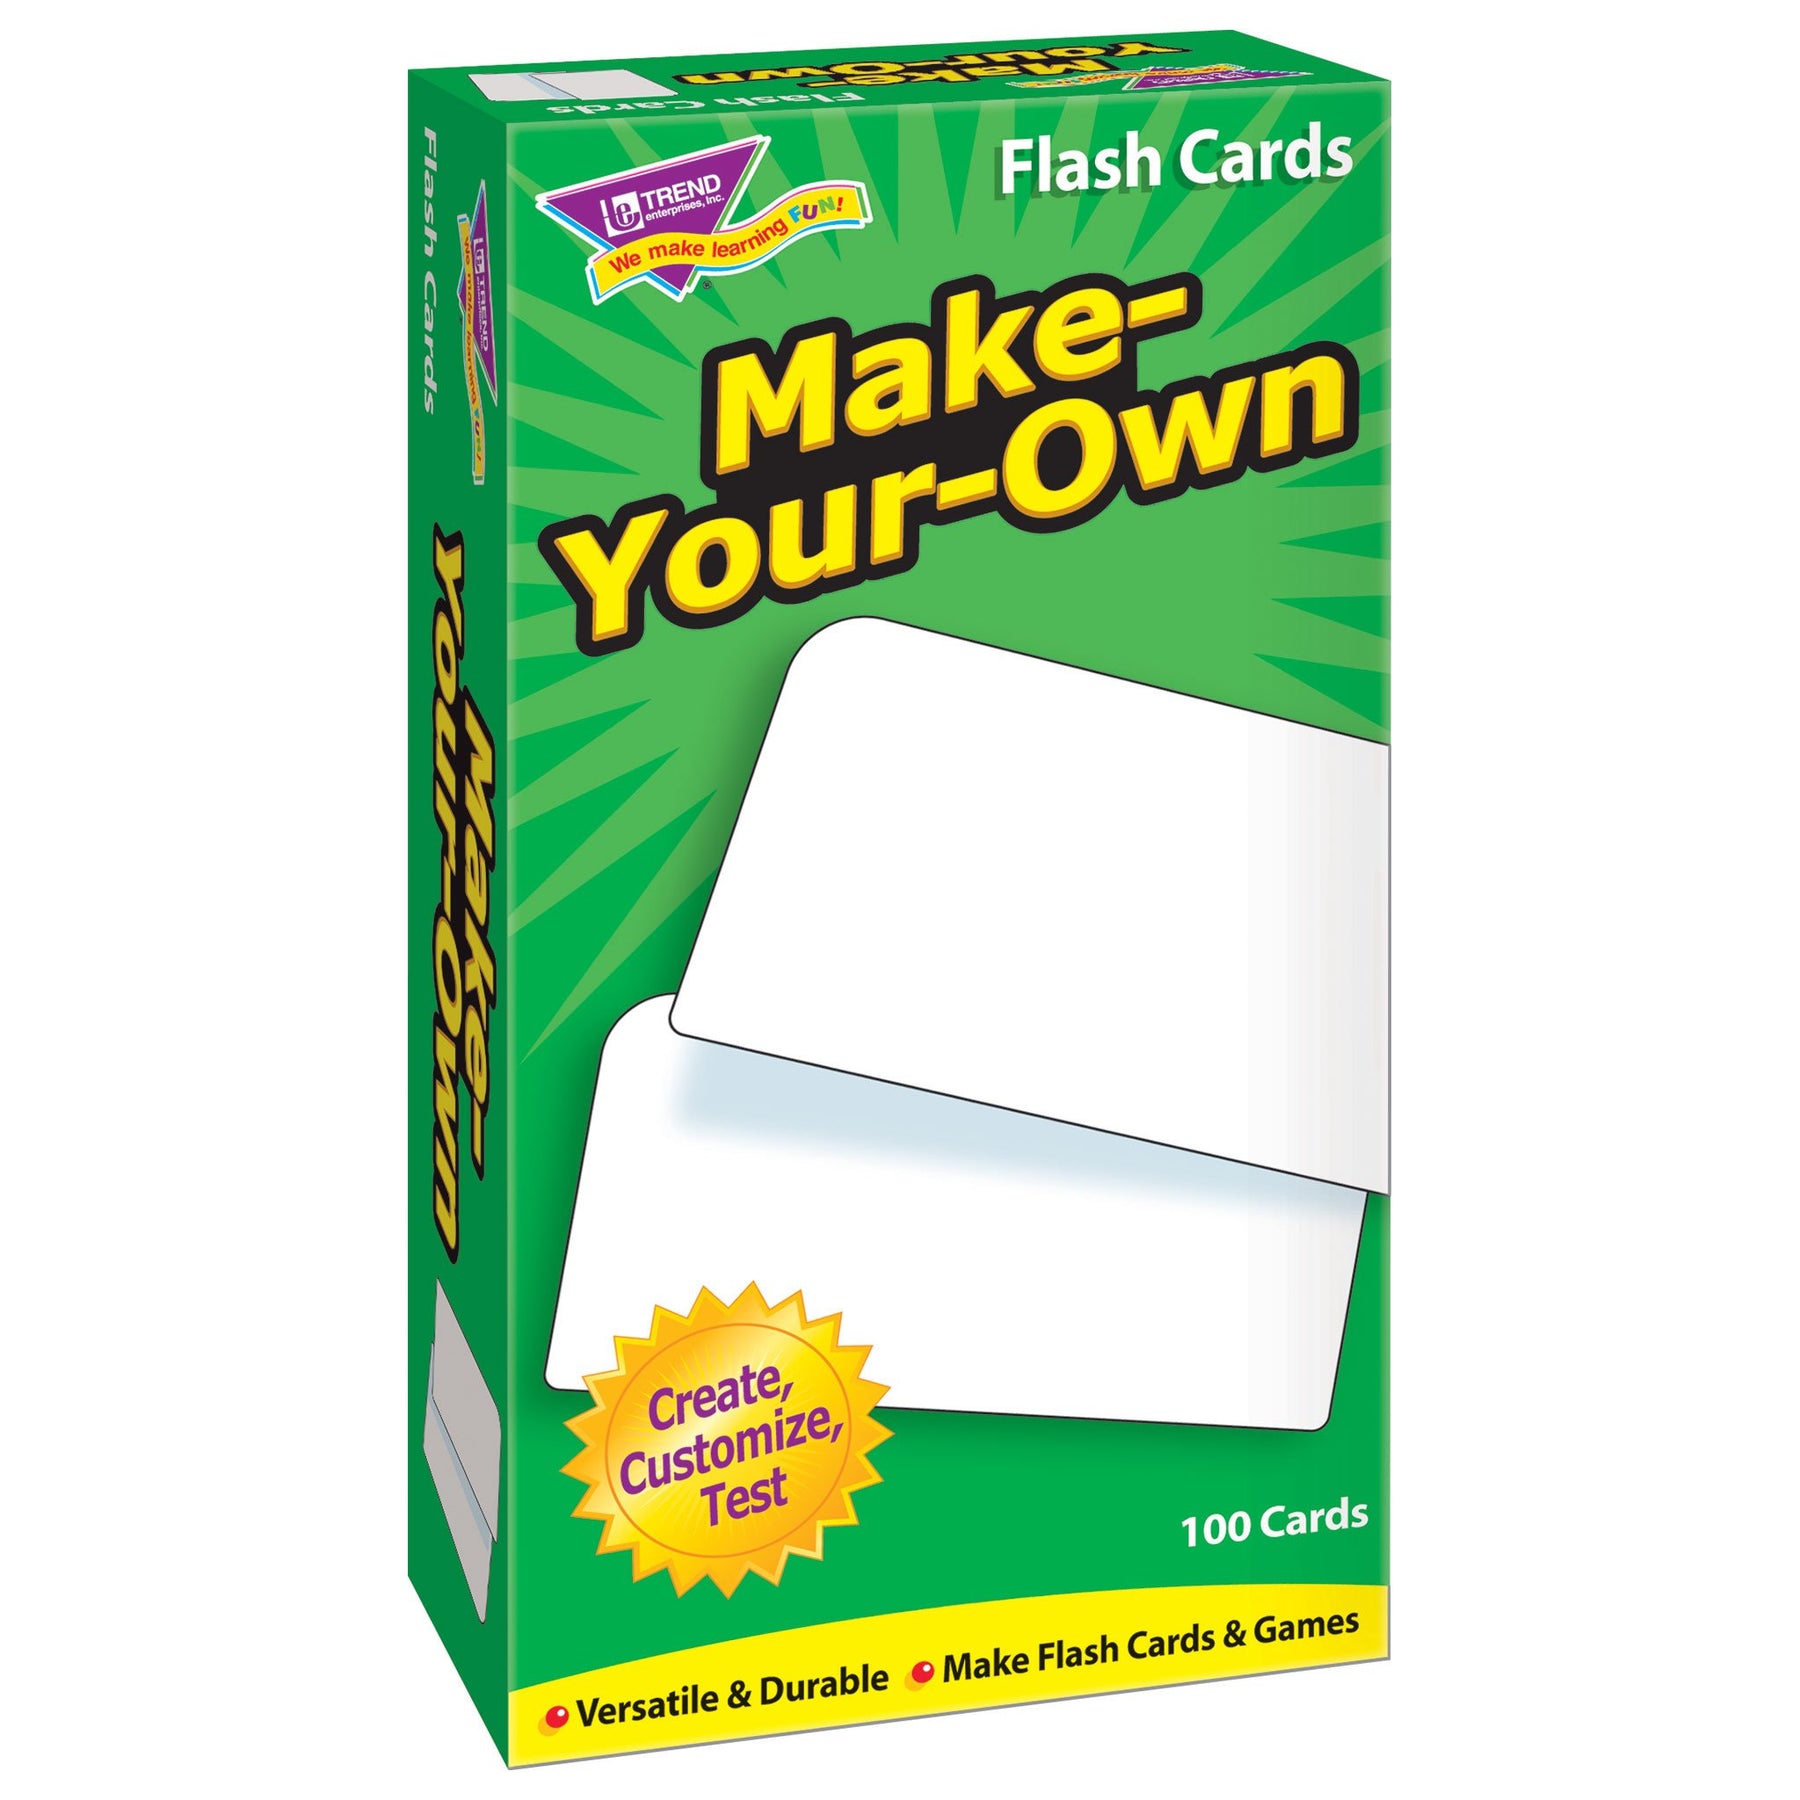 Build a DIY Card Box - Build Basic